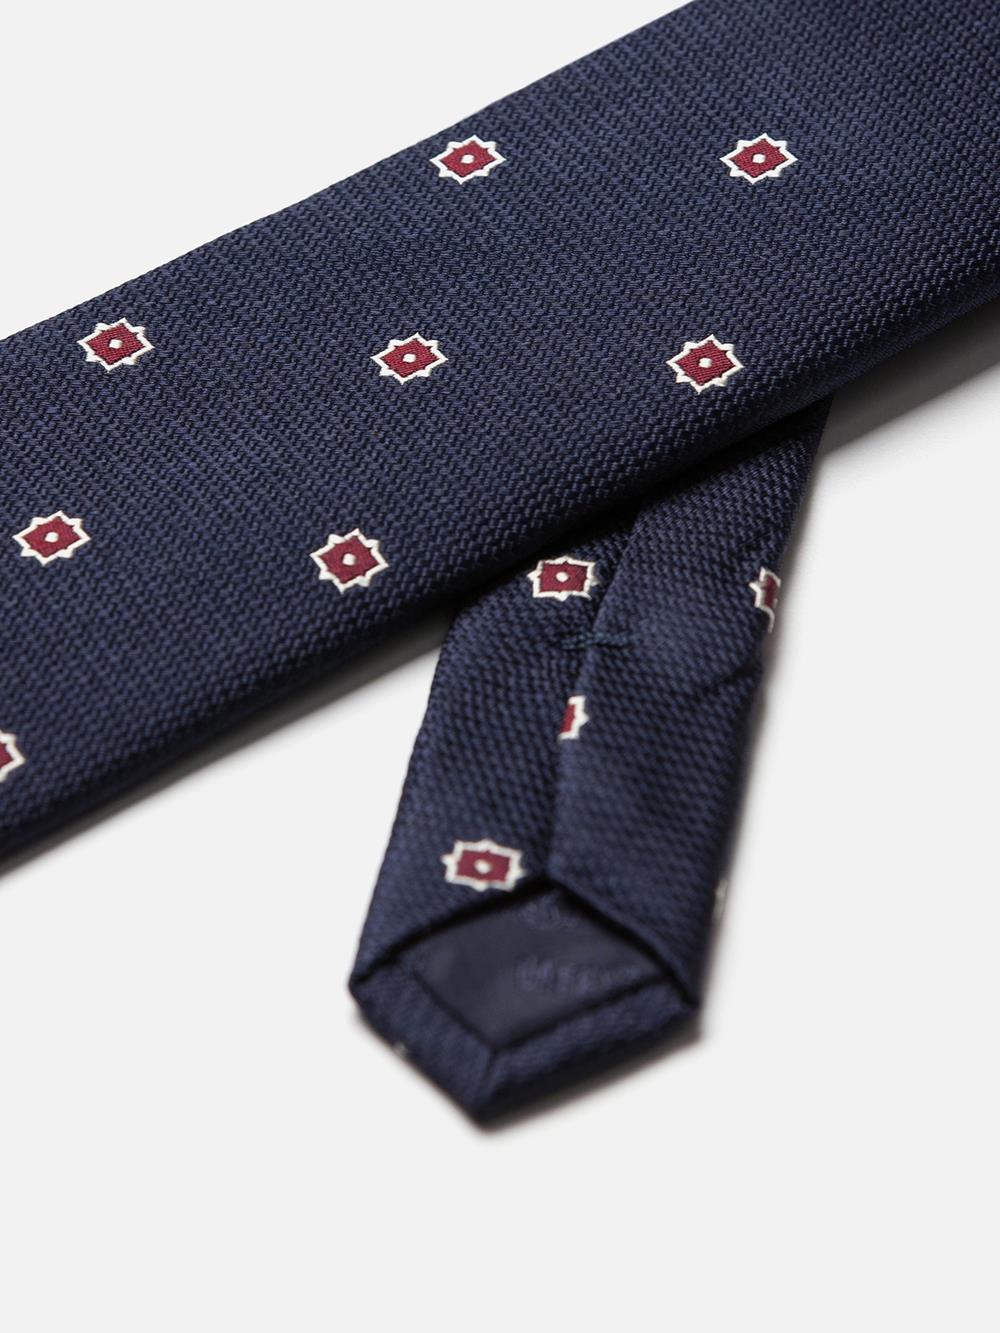 Zijden stropdas met bordeaux patroon